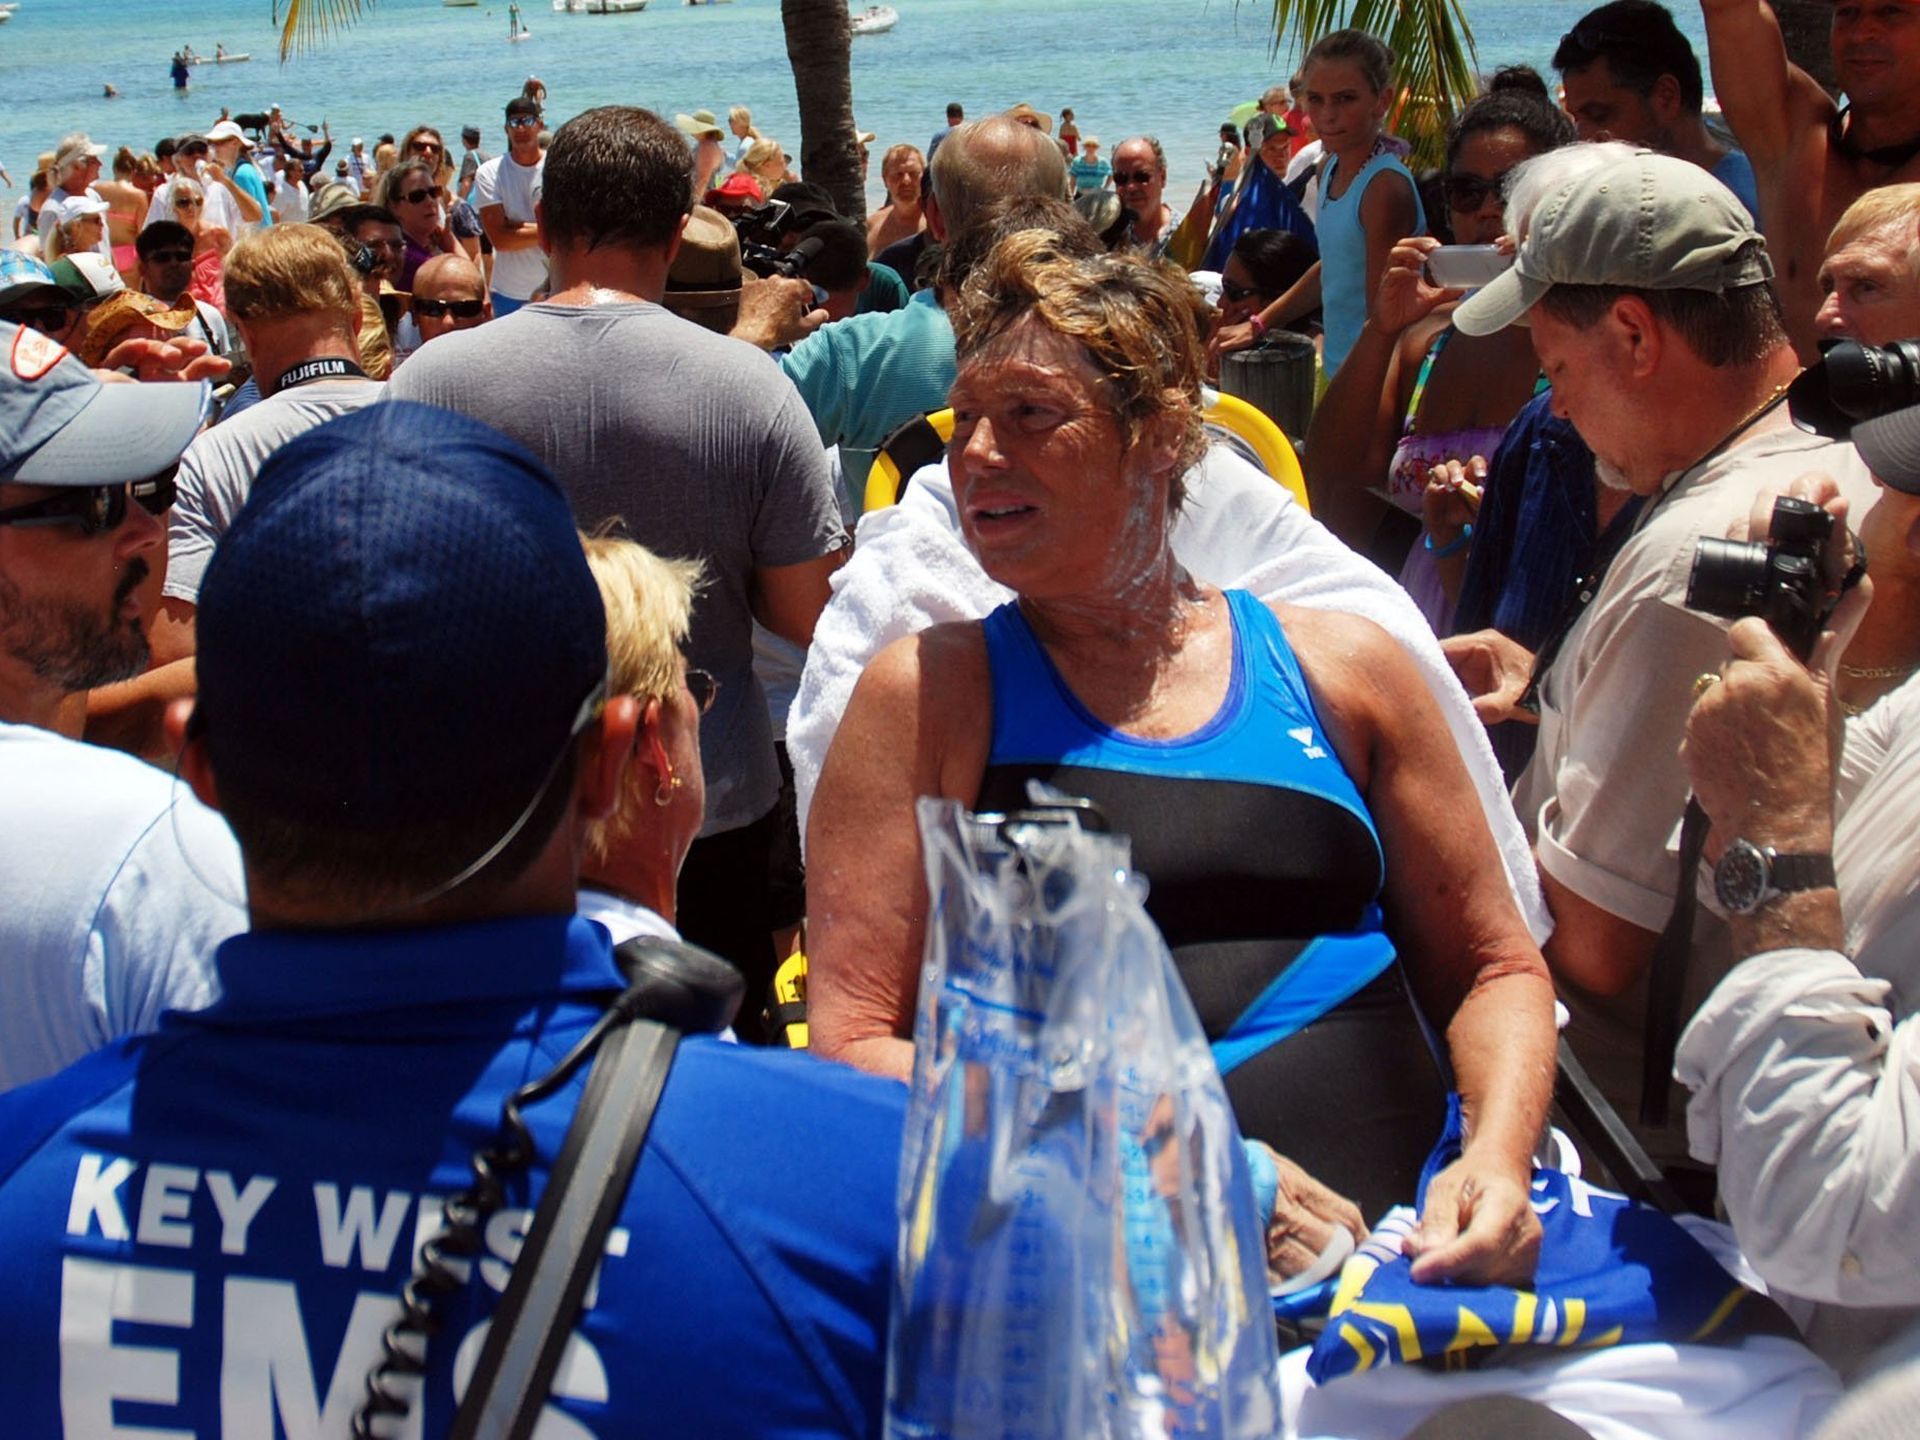 Nyad' vs. the True Story of Diana Nyad's Cuba-to-Florida Swim